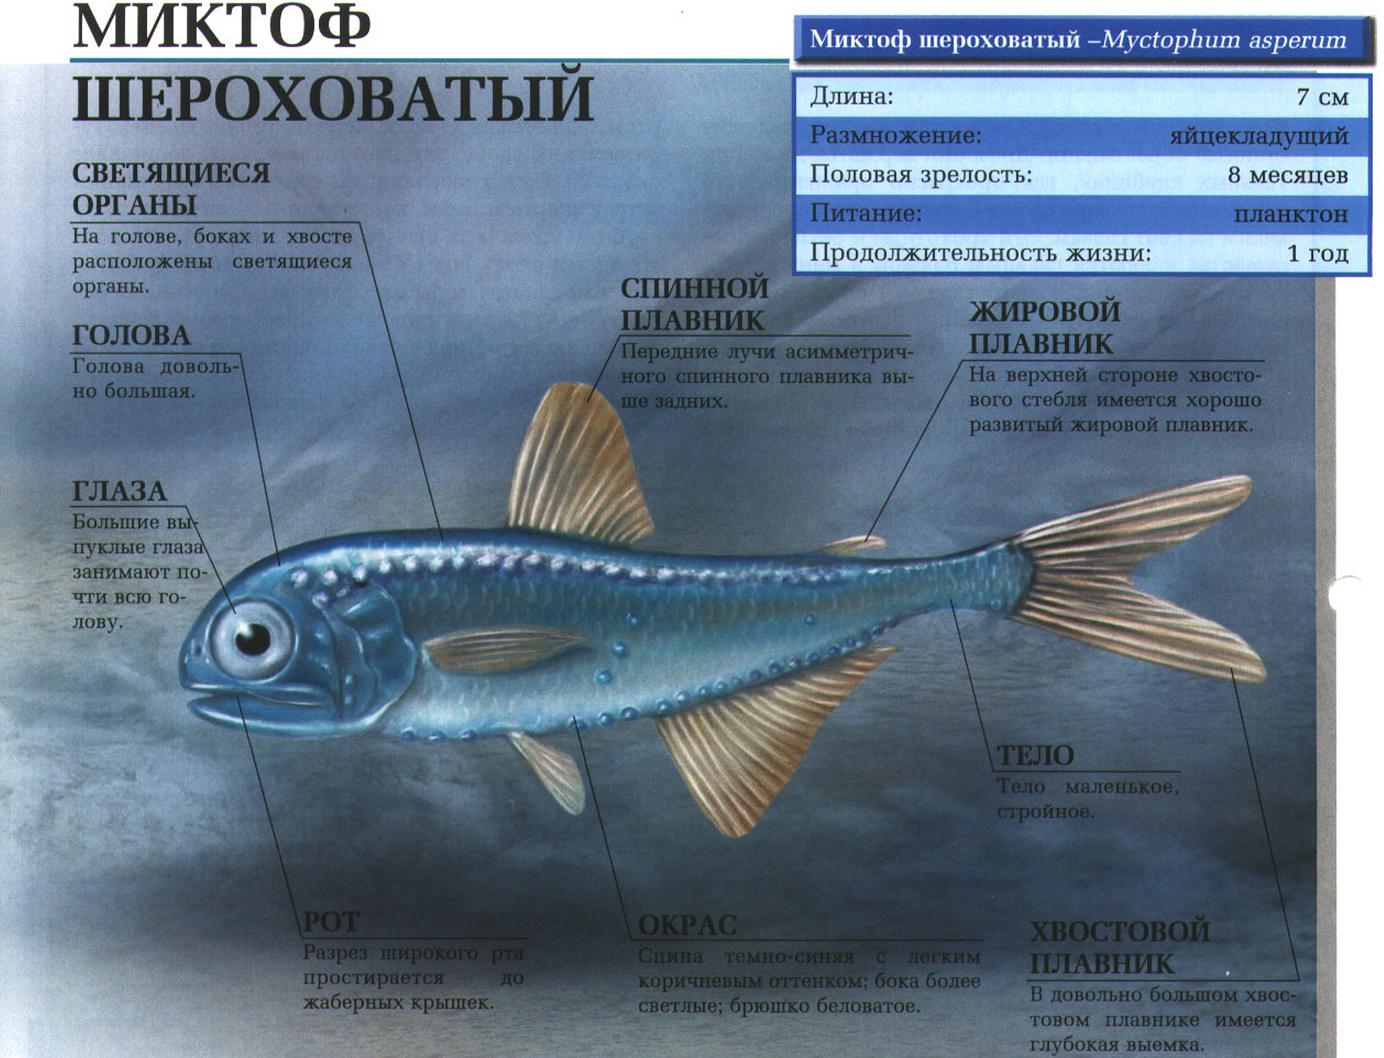 Миктоф шероховатый – маленькая глубоководная стайная рыбка.:::Шероховатый миктоф.